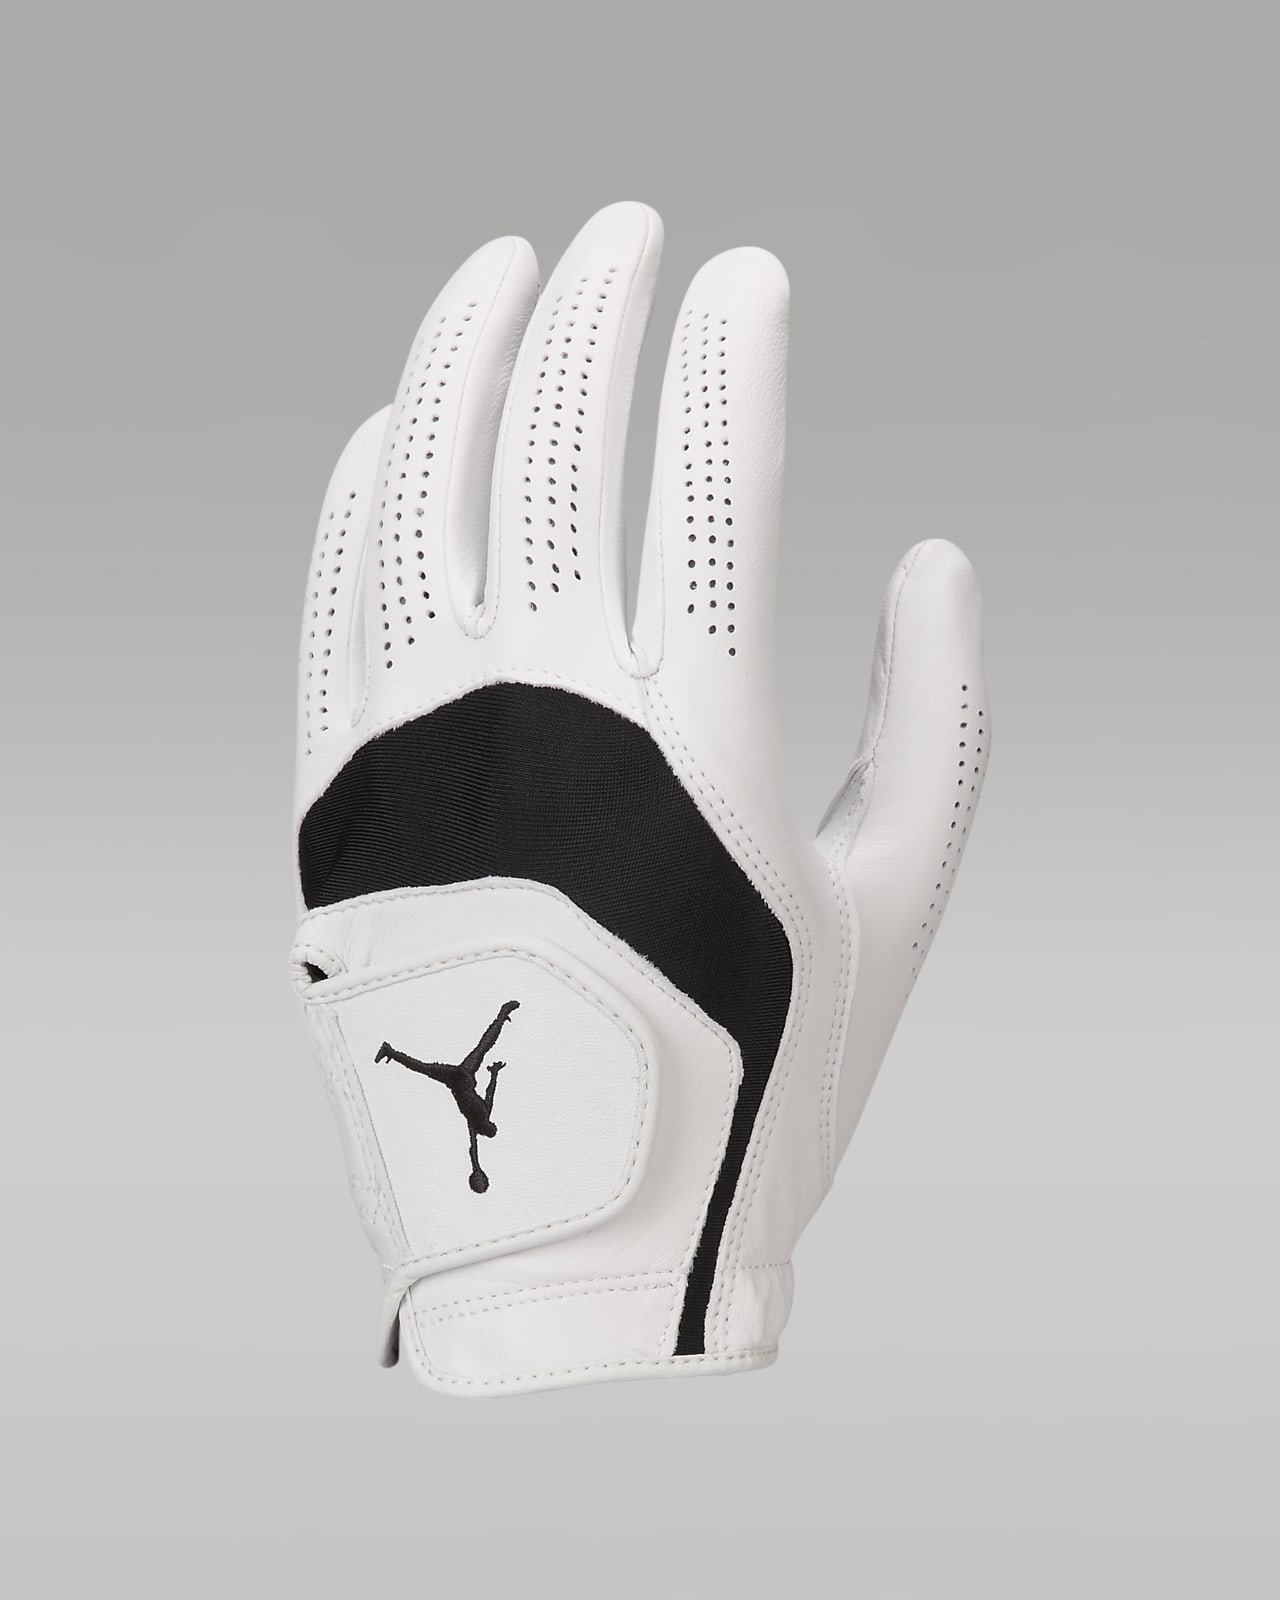 Jordan Tour Golf Glove (Left Cadet)